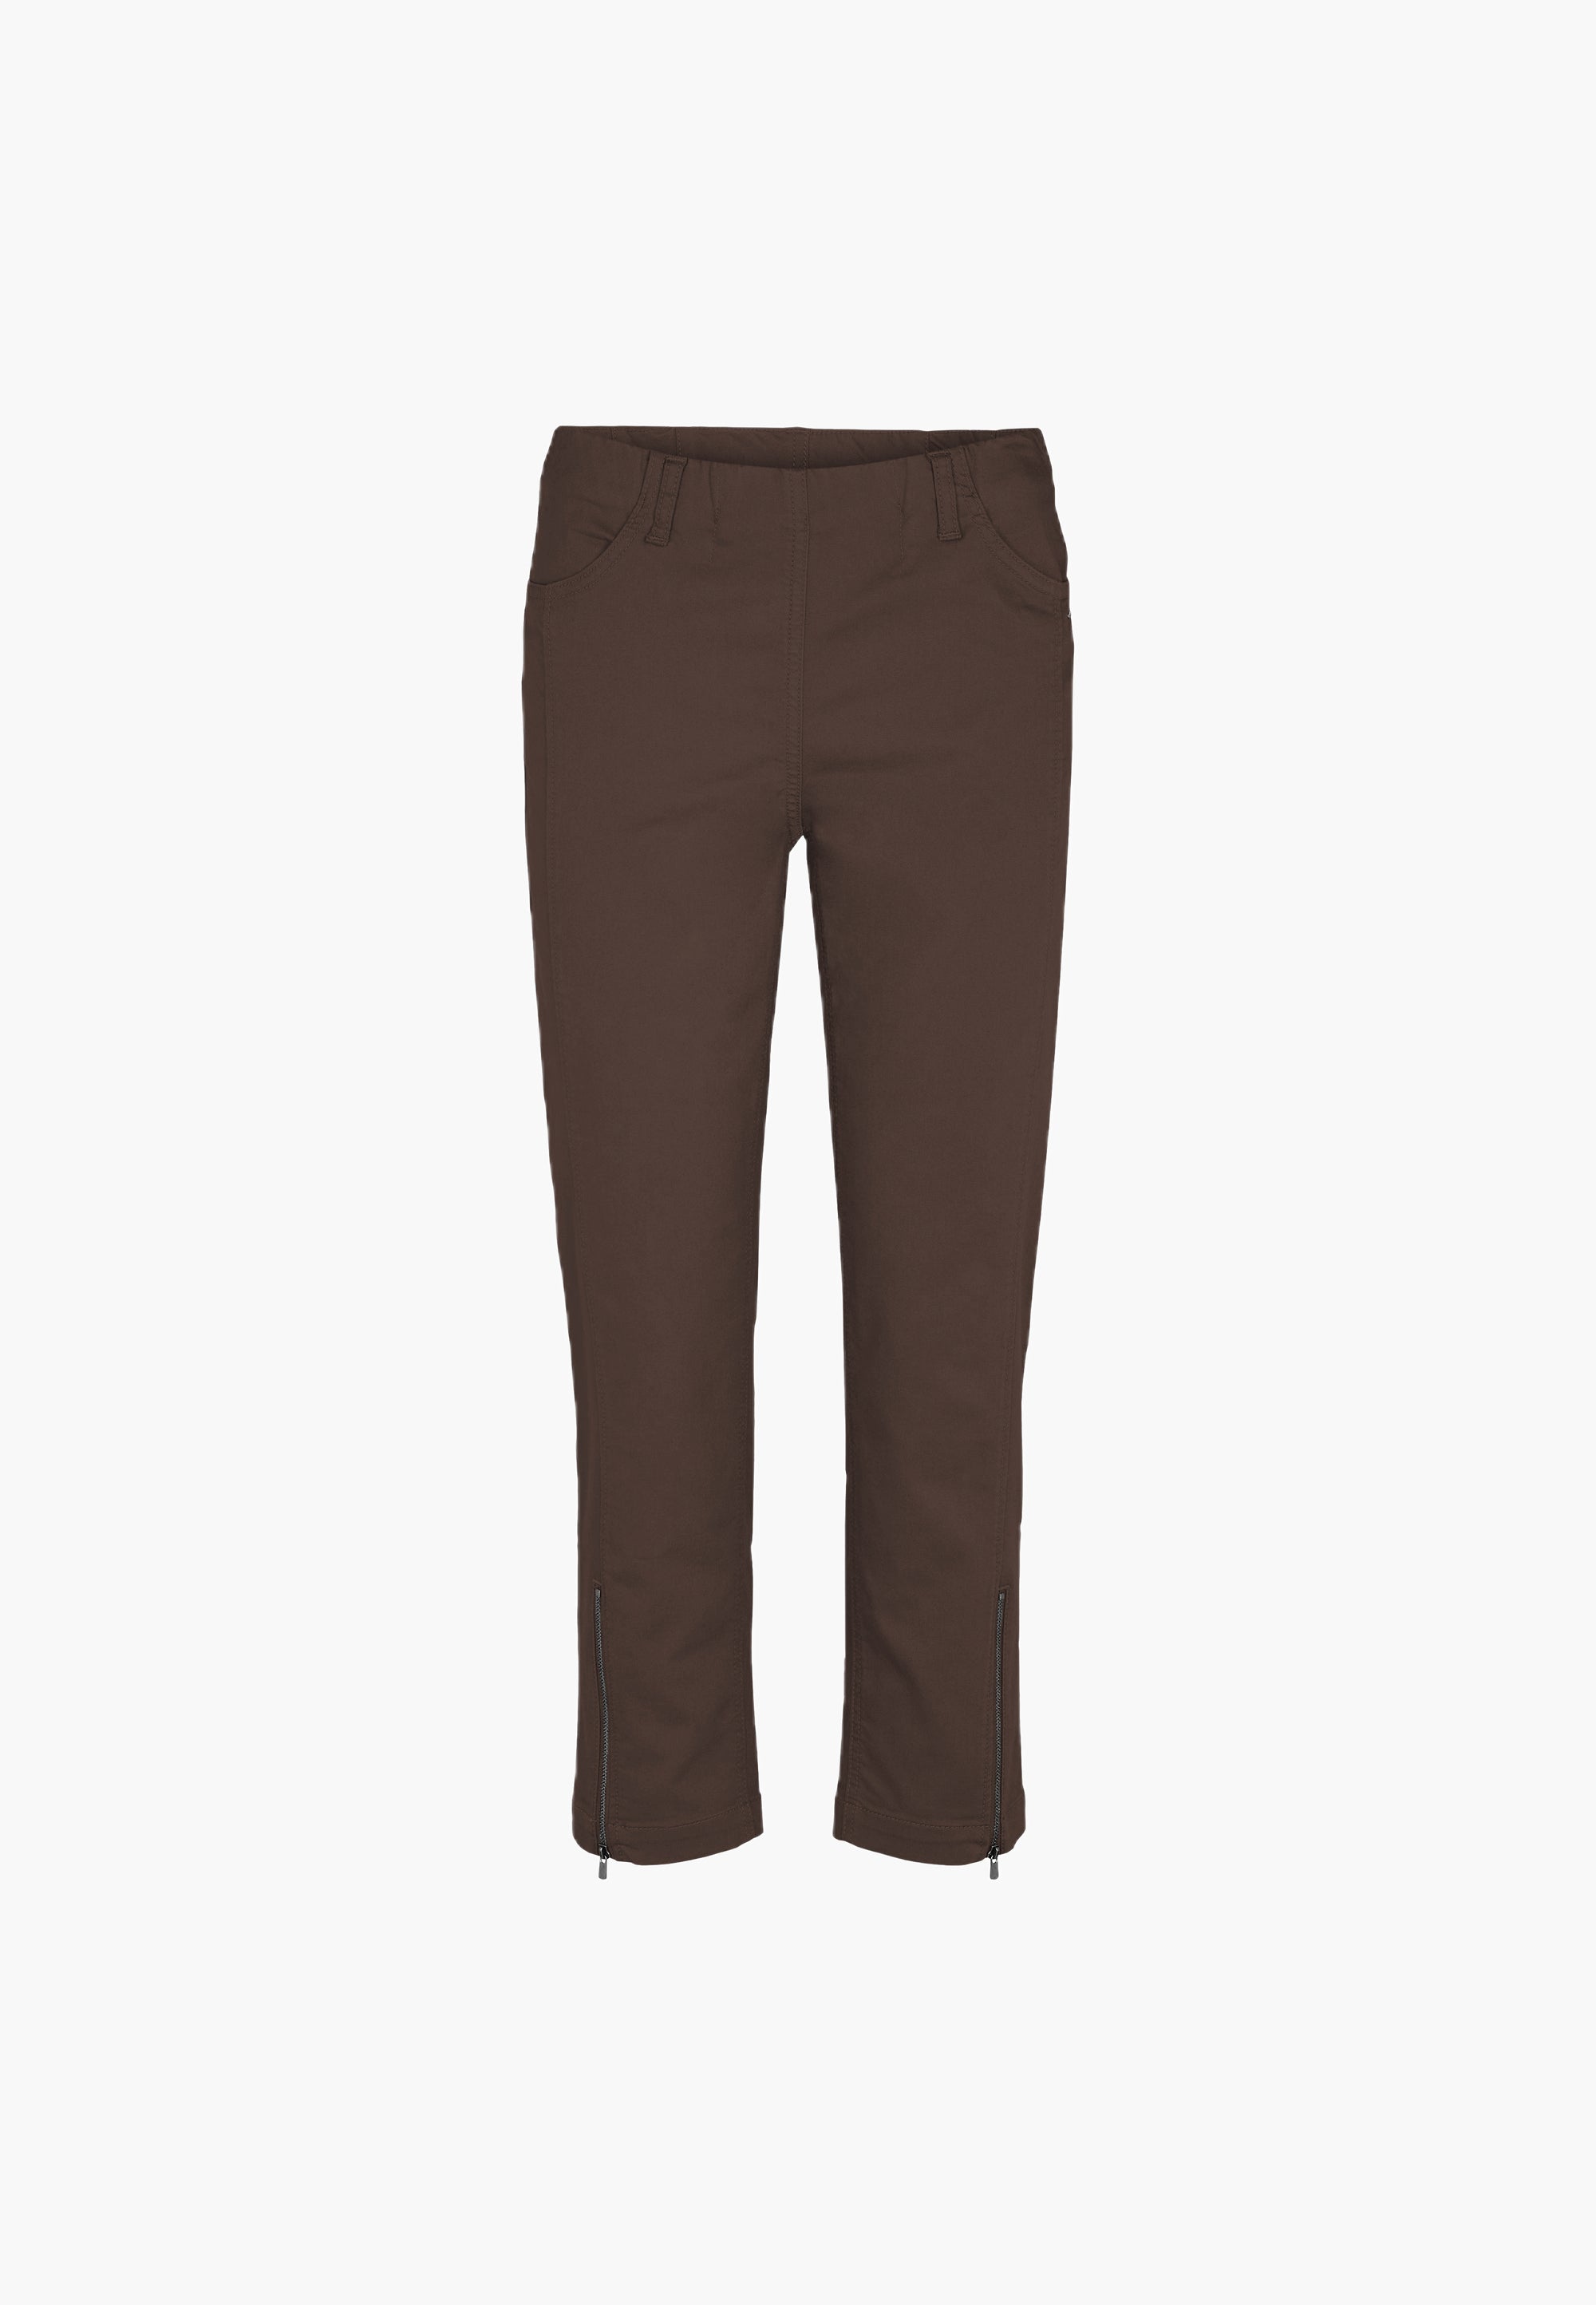 LAURIE Piper Regular Crop Trousers REGULAR 88000 Brown